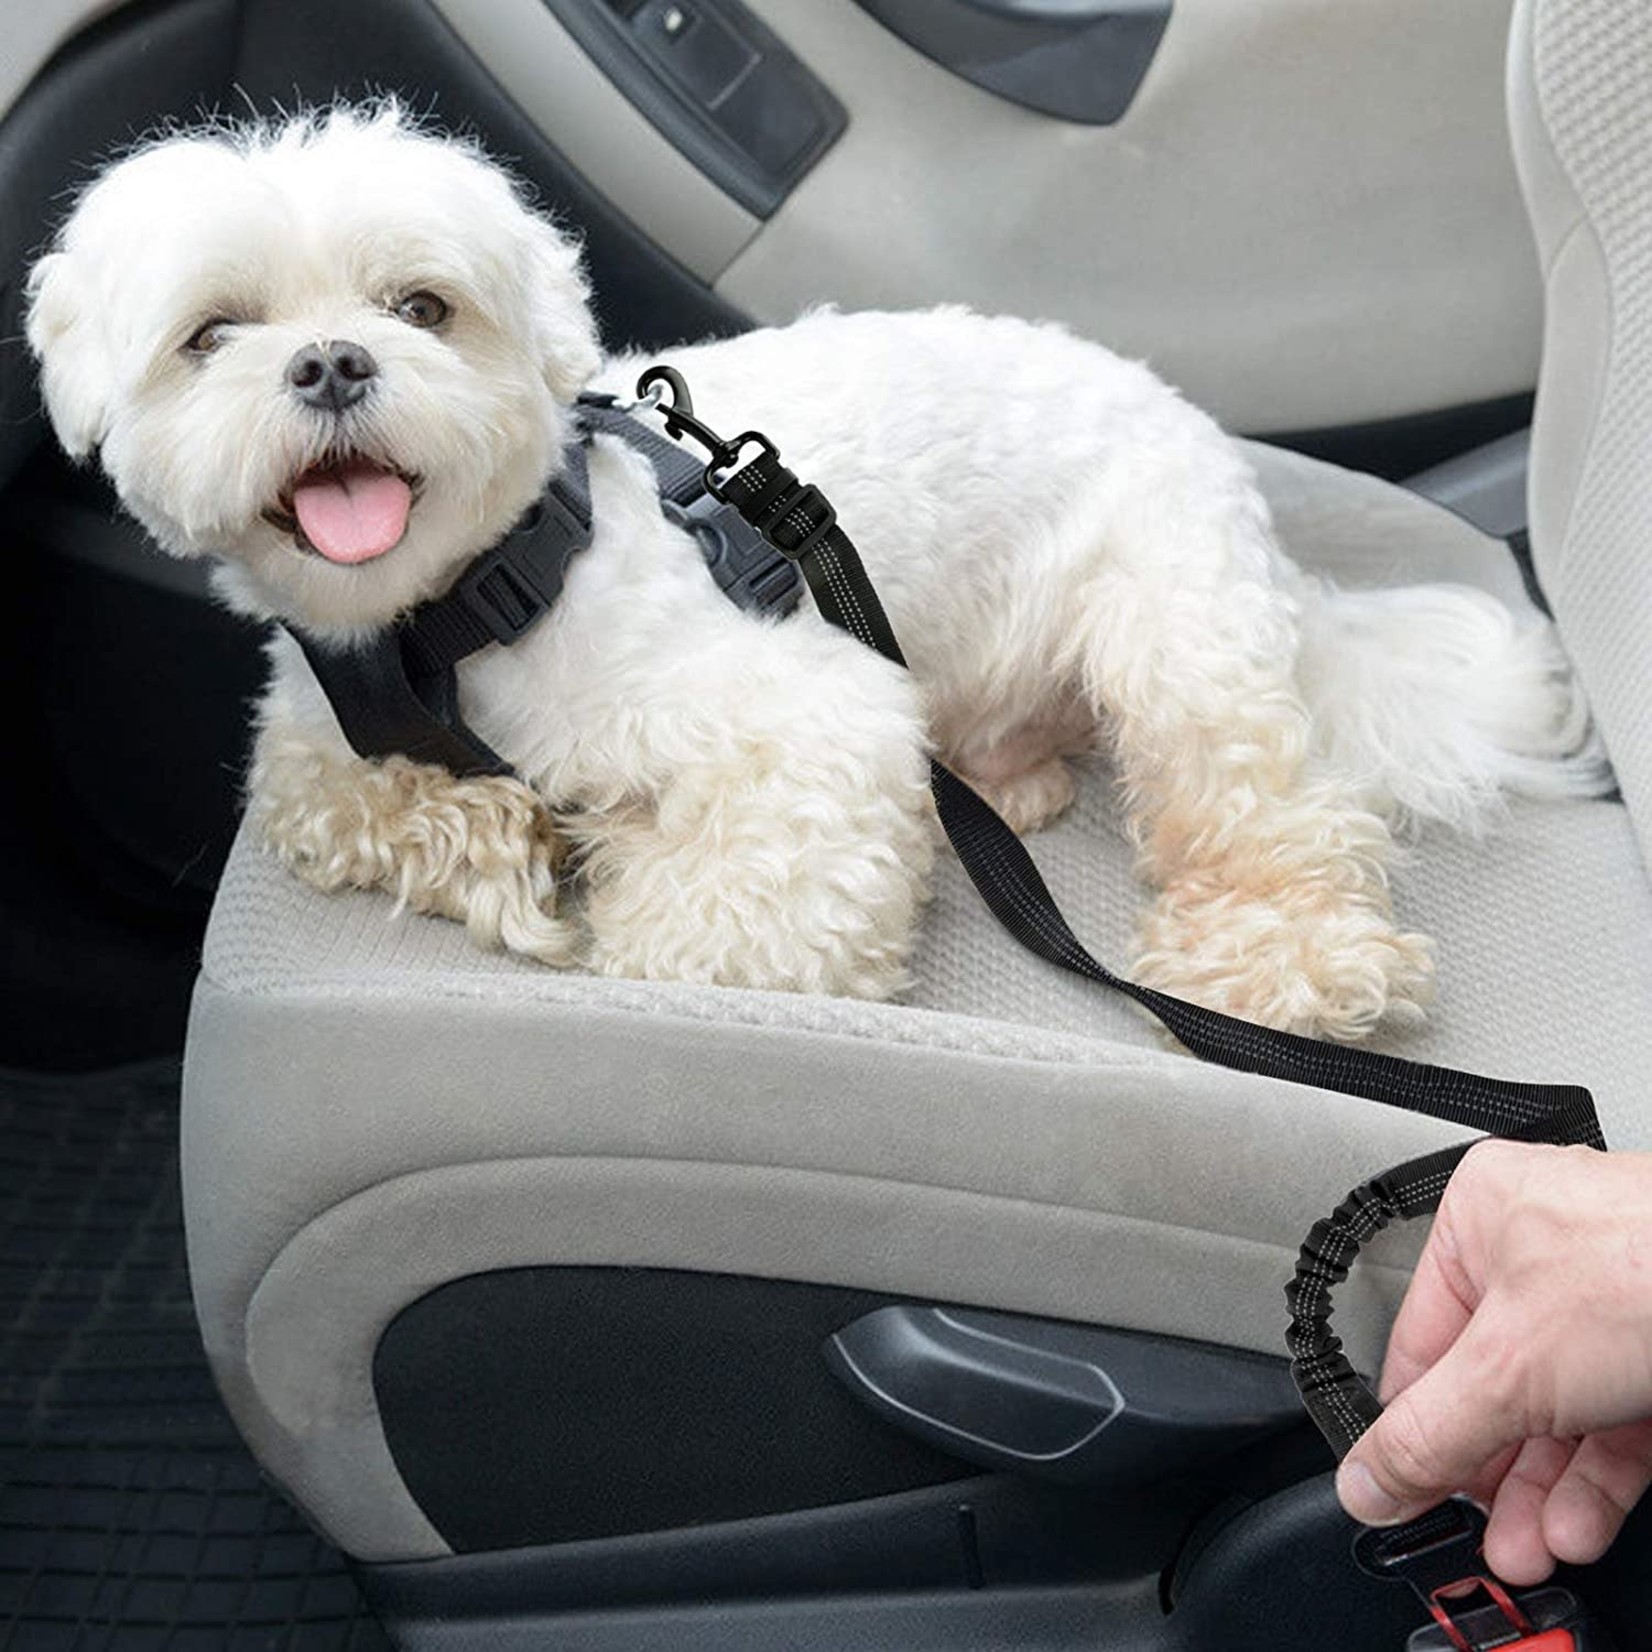 Adjustable Car Seat Belt